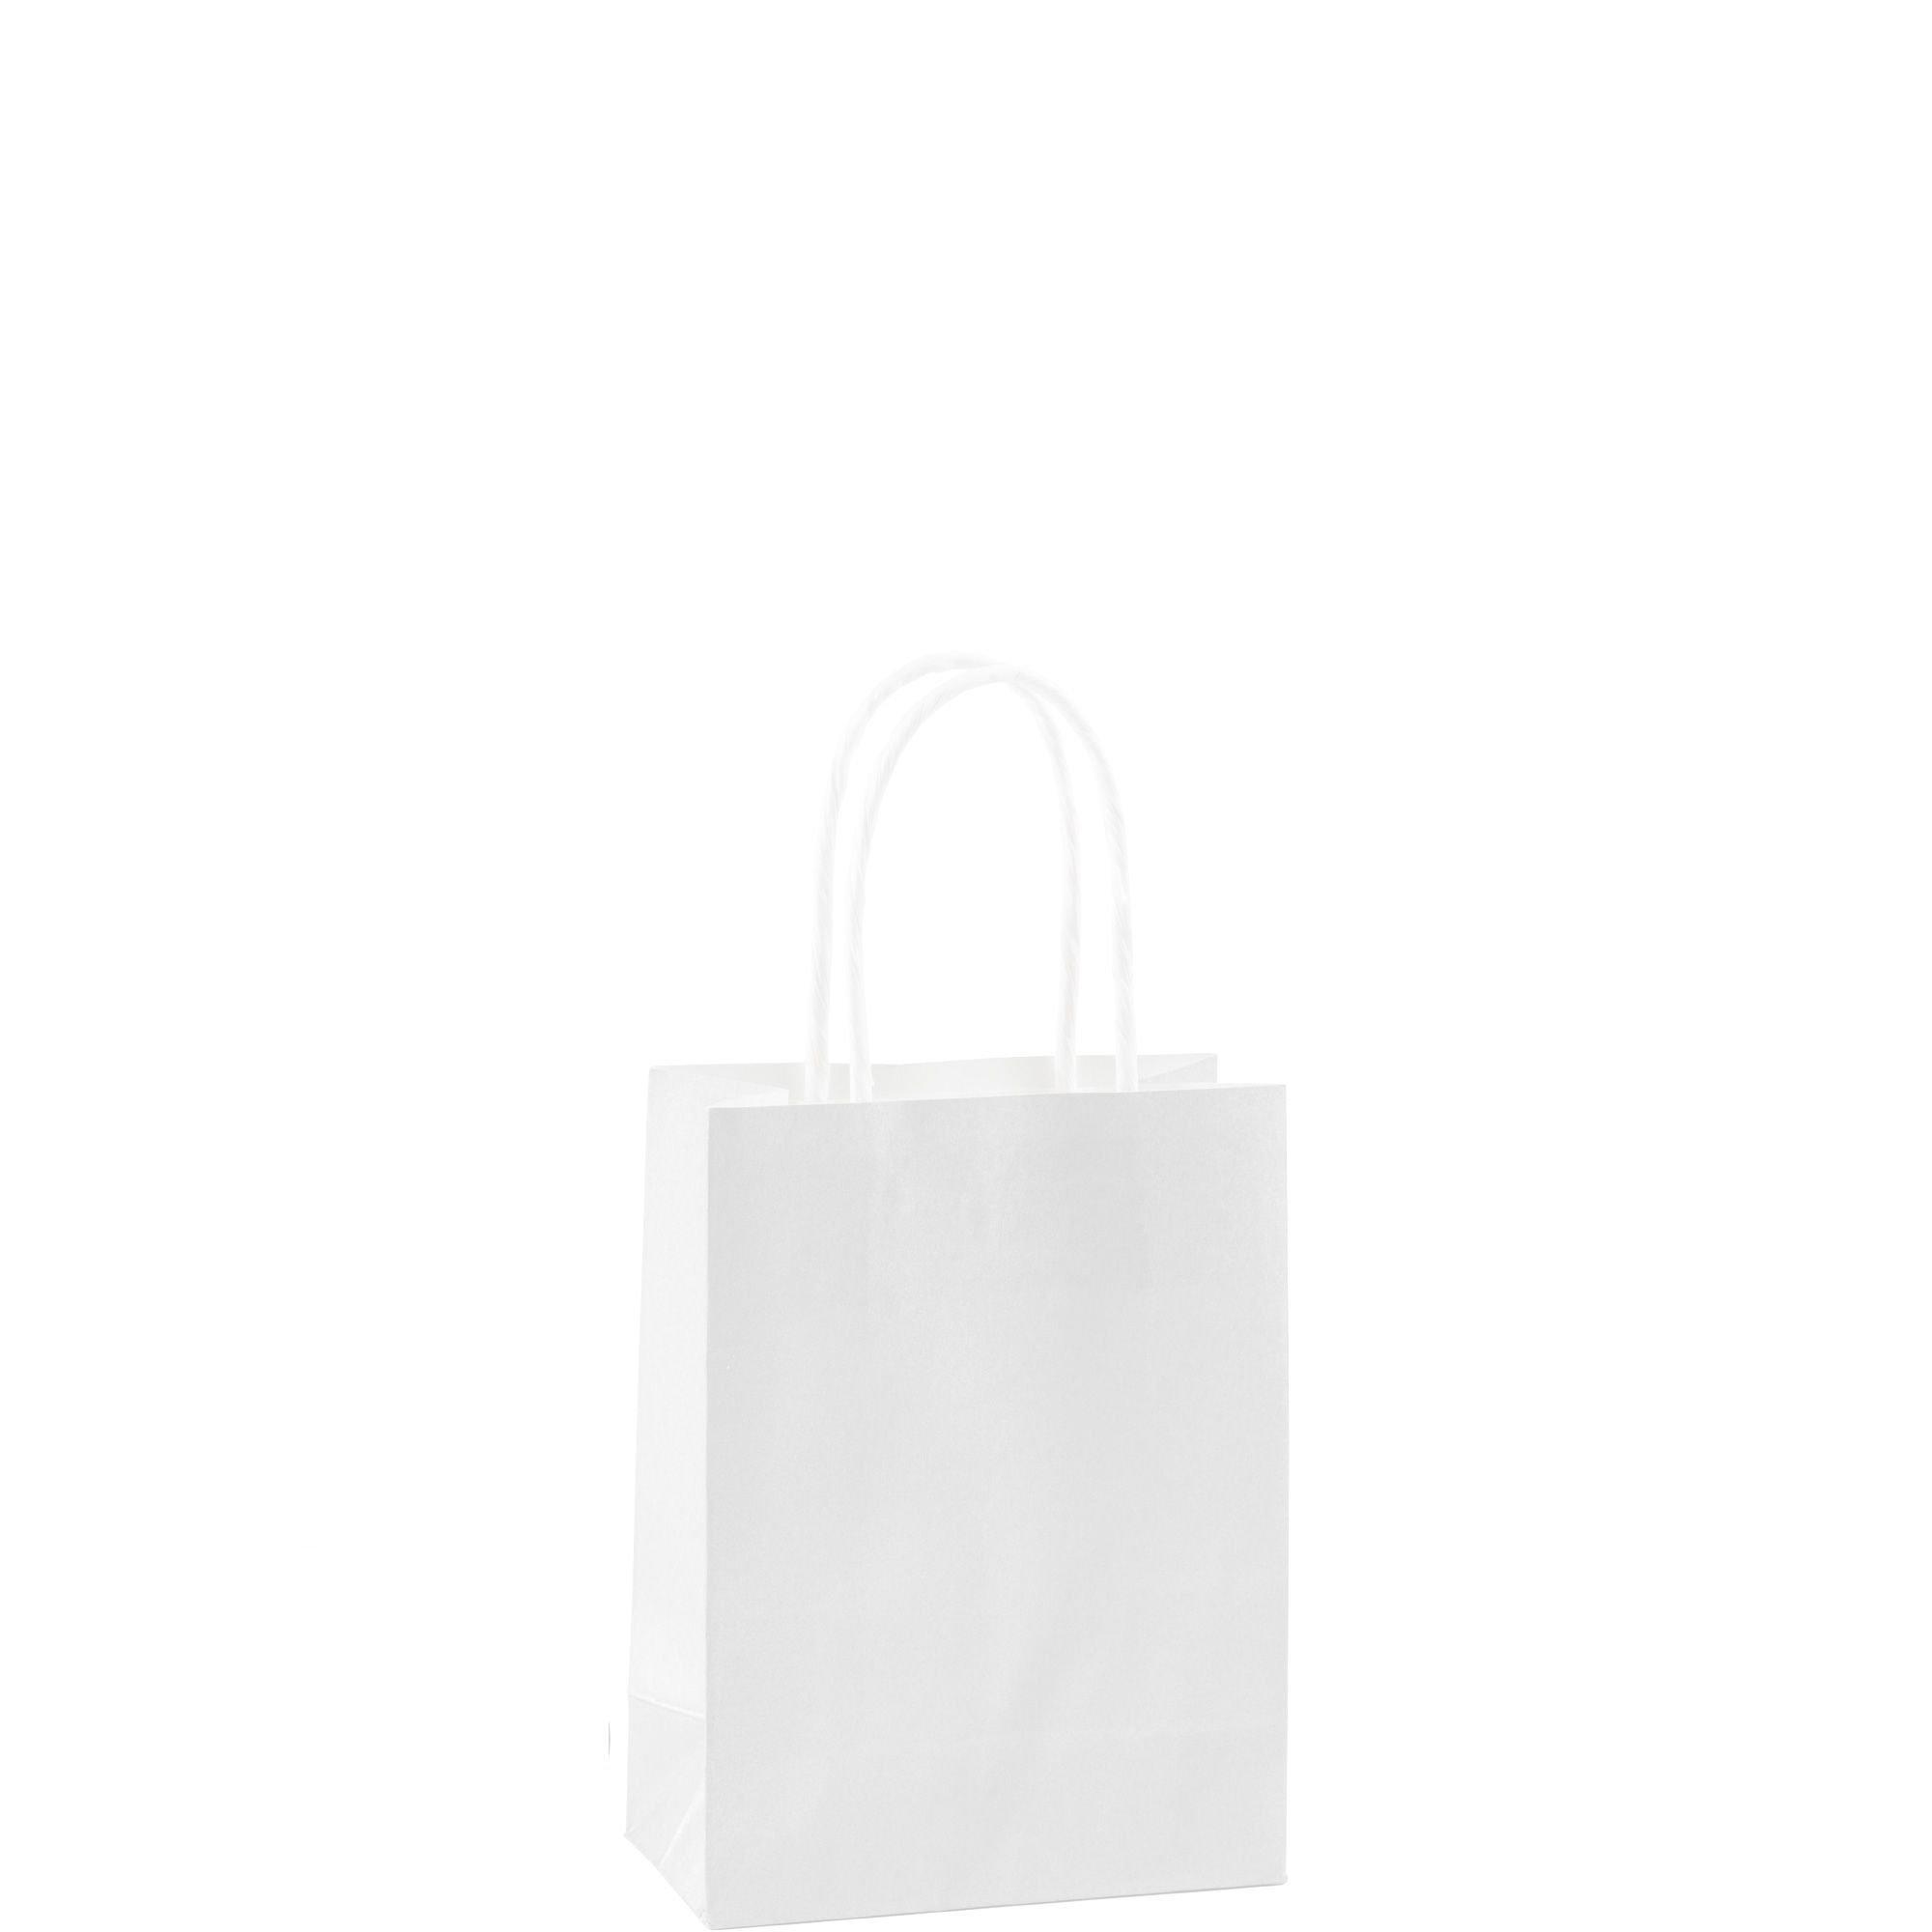 White Filled Gift Paper Bag - Custom Scene